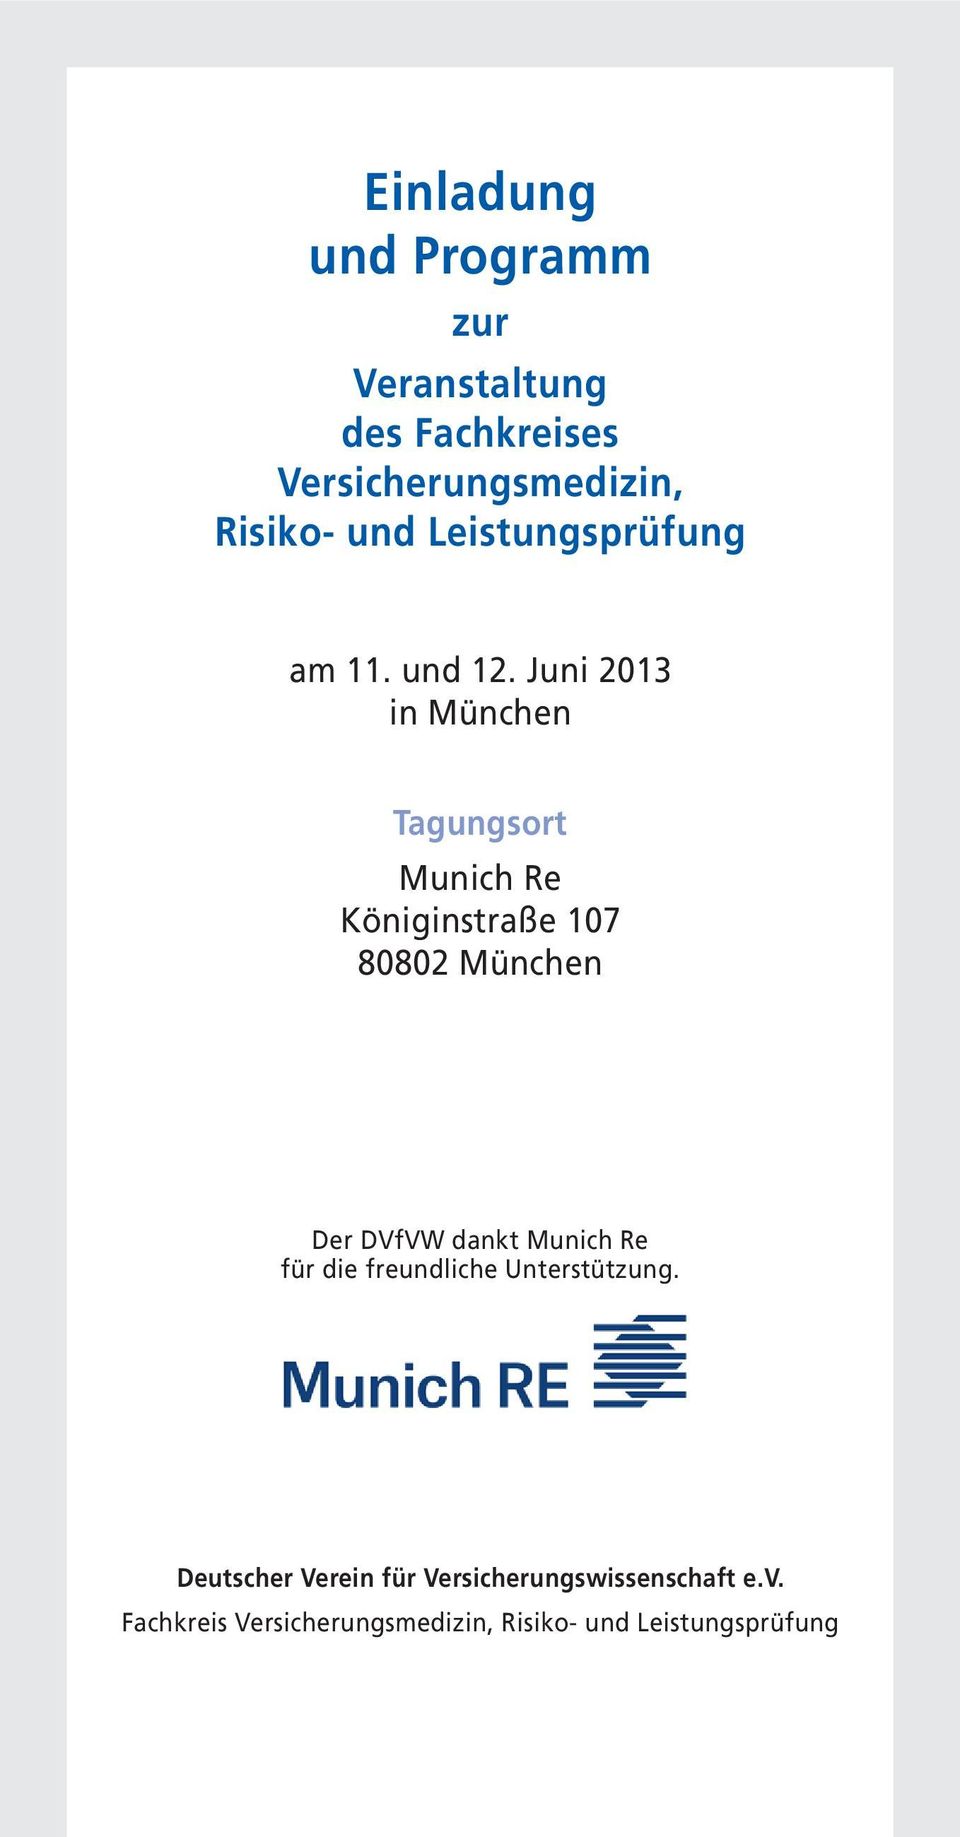 Juni 2013 in München Tagungsort Munich Re Königinstraße 107 80802 München Der DVfVW dankt